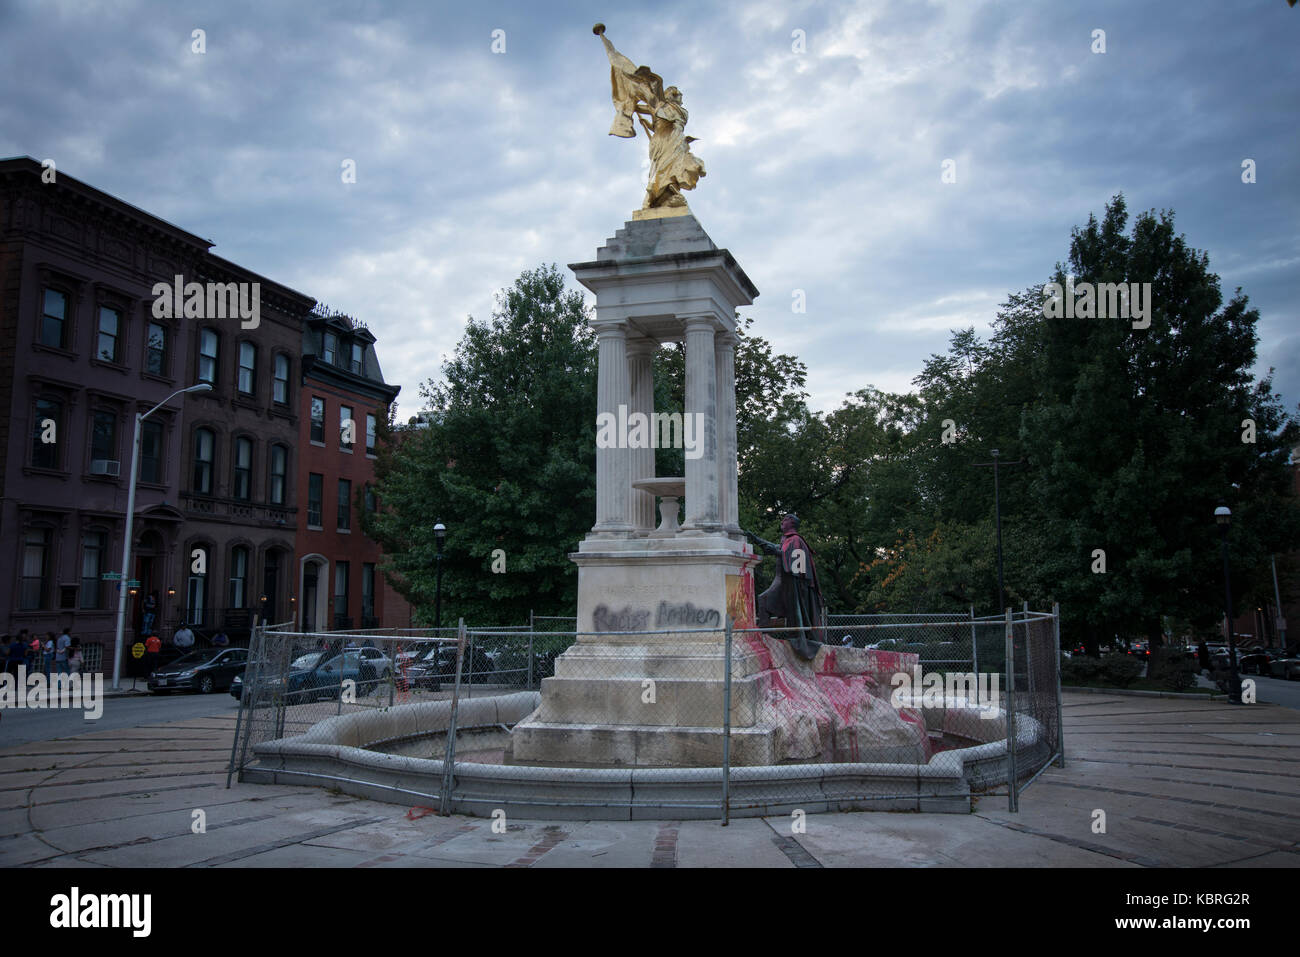 Francis Scott key statua in Bolton hill vandalizzato con spray-vernice. baltimore city recentemente rimosso tre monumenti in onore di figure confederato Foto Stock